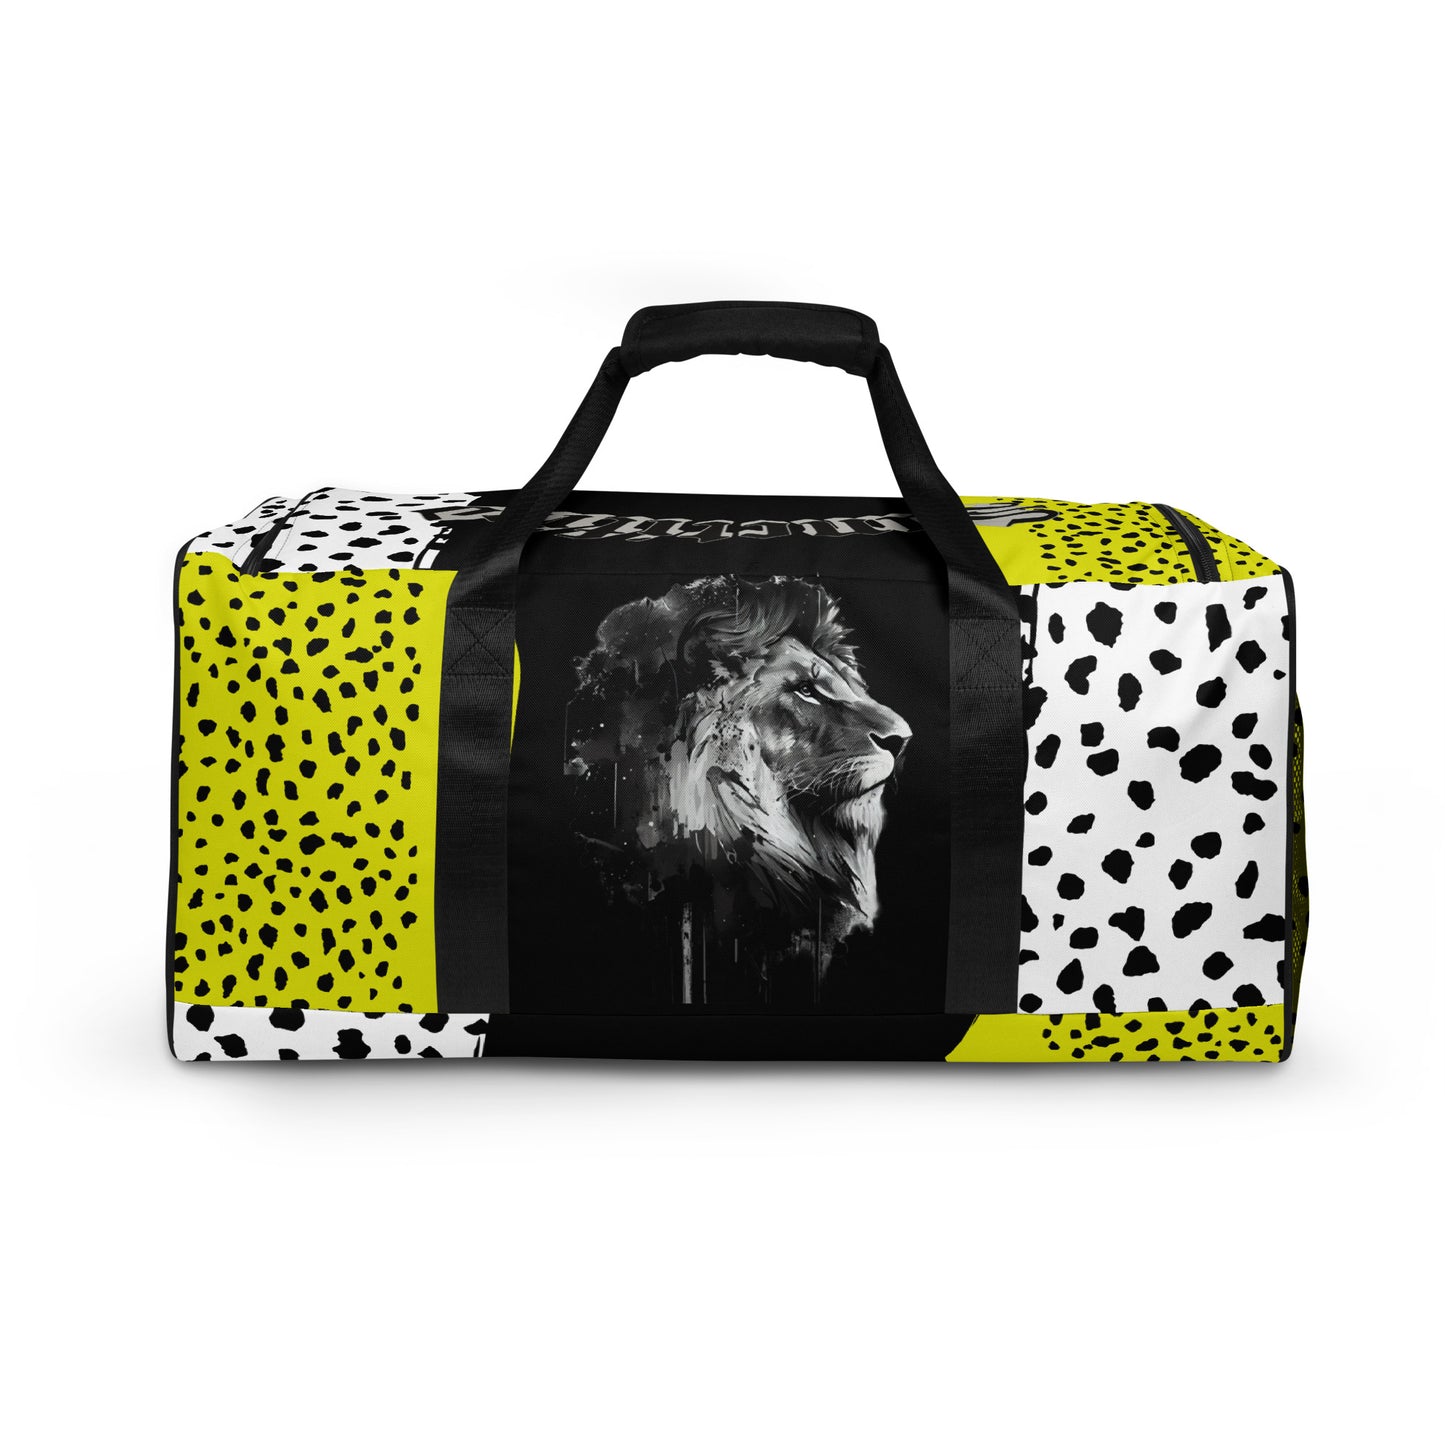 Regal Lion- Duffle bag